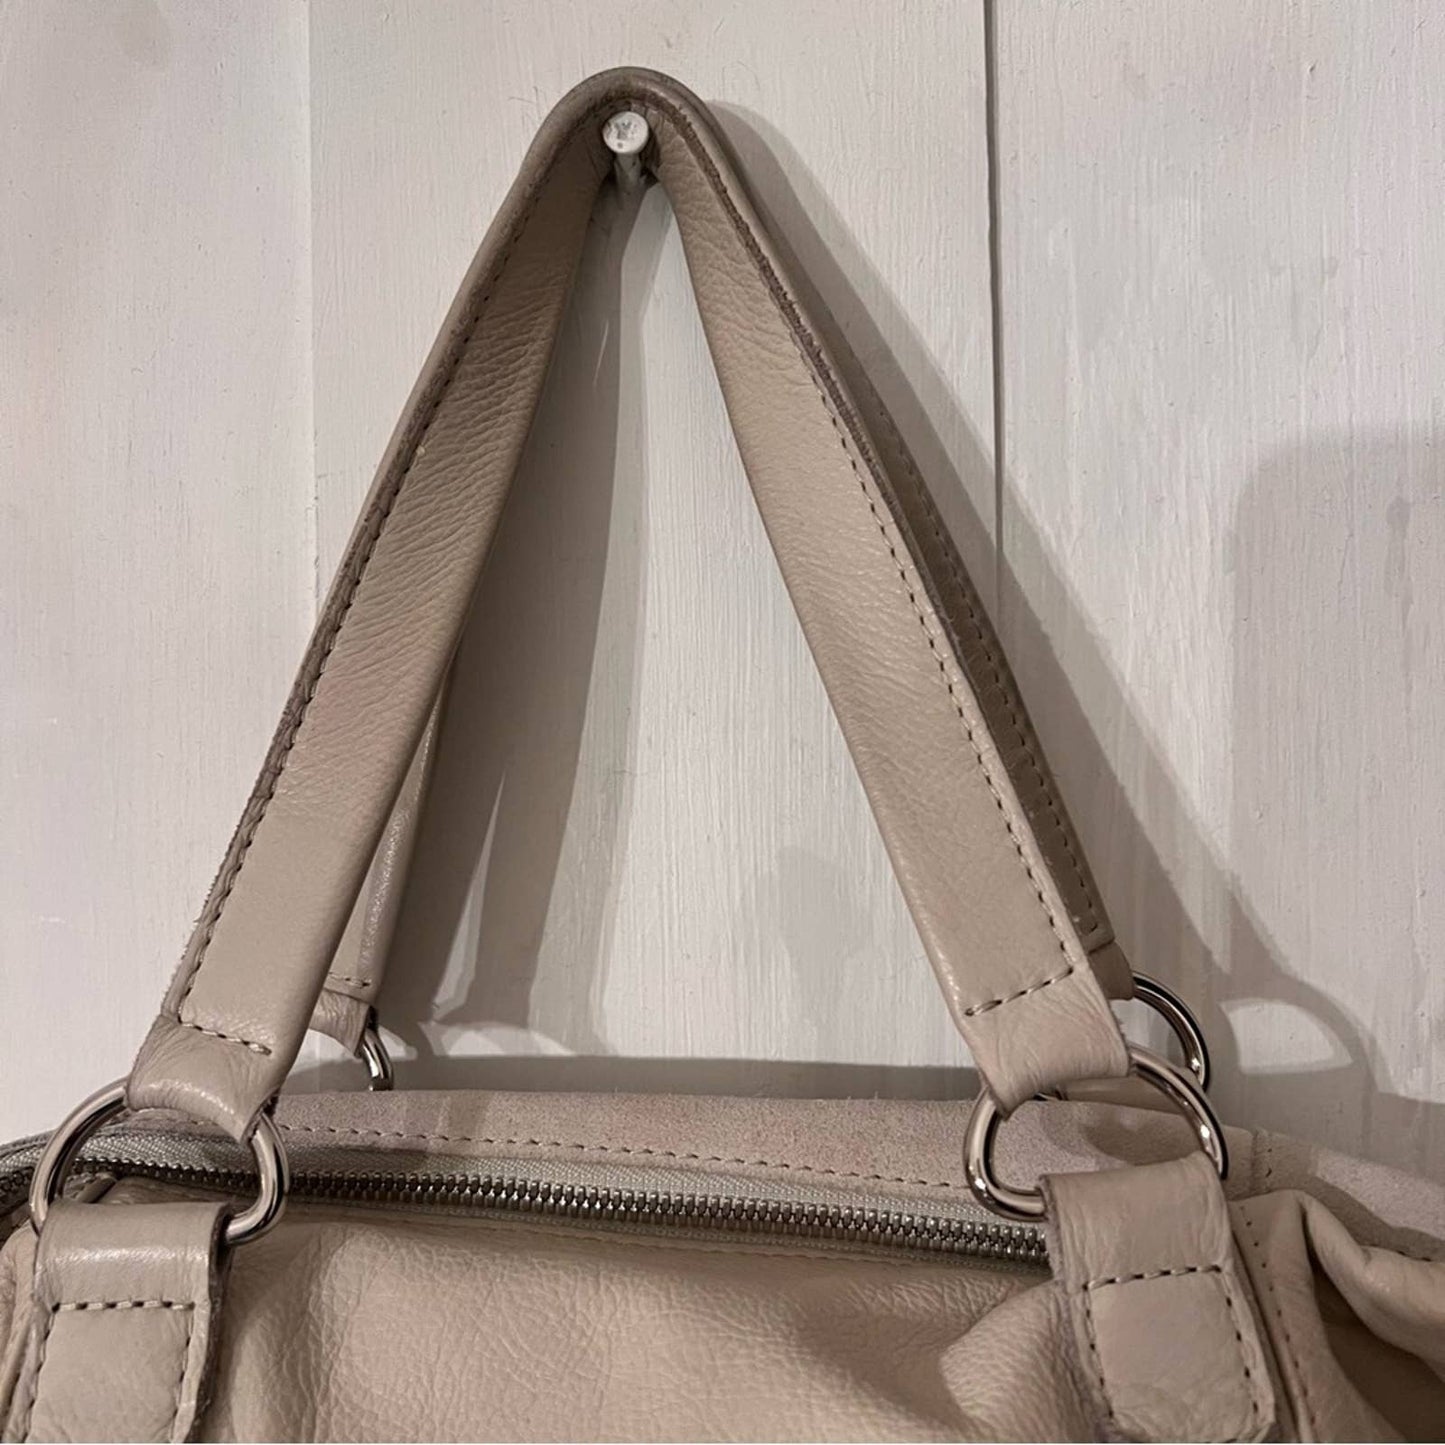 HAMMITT Large Beige Soft Leather& Suede Shoulder Bag